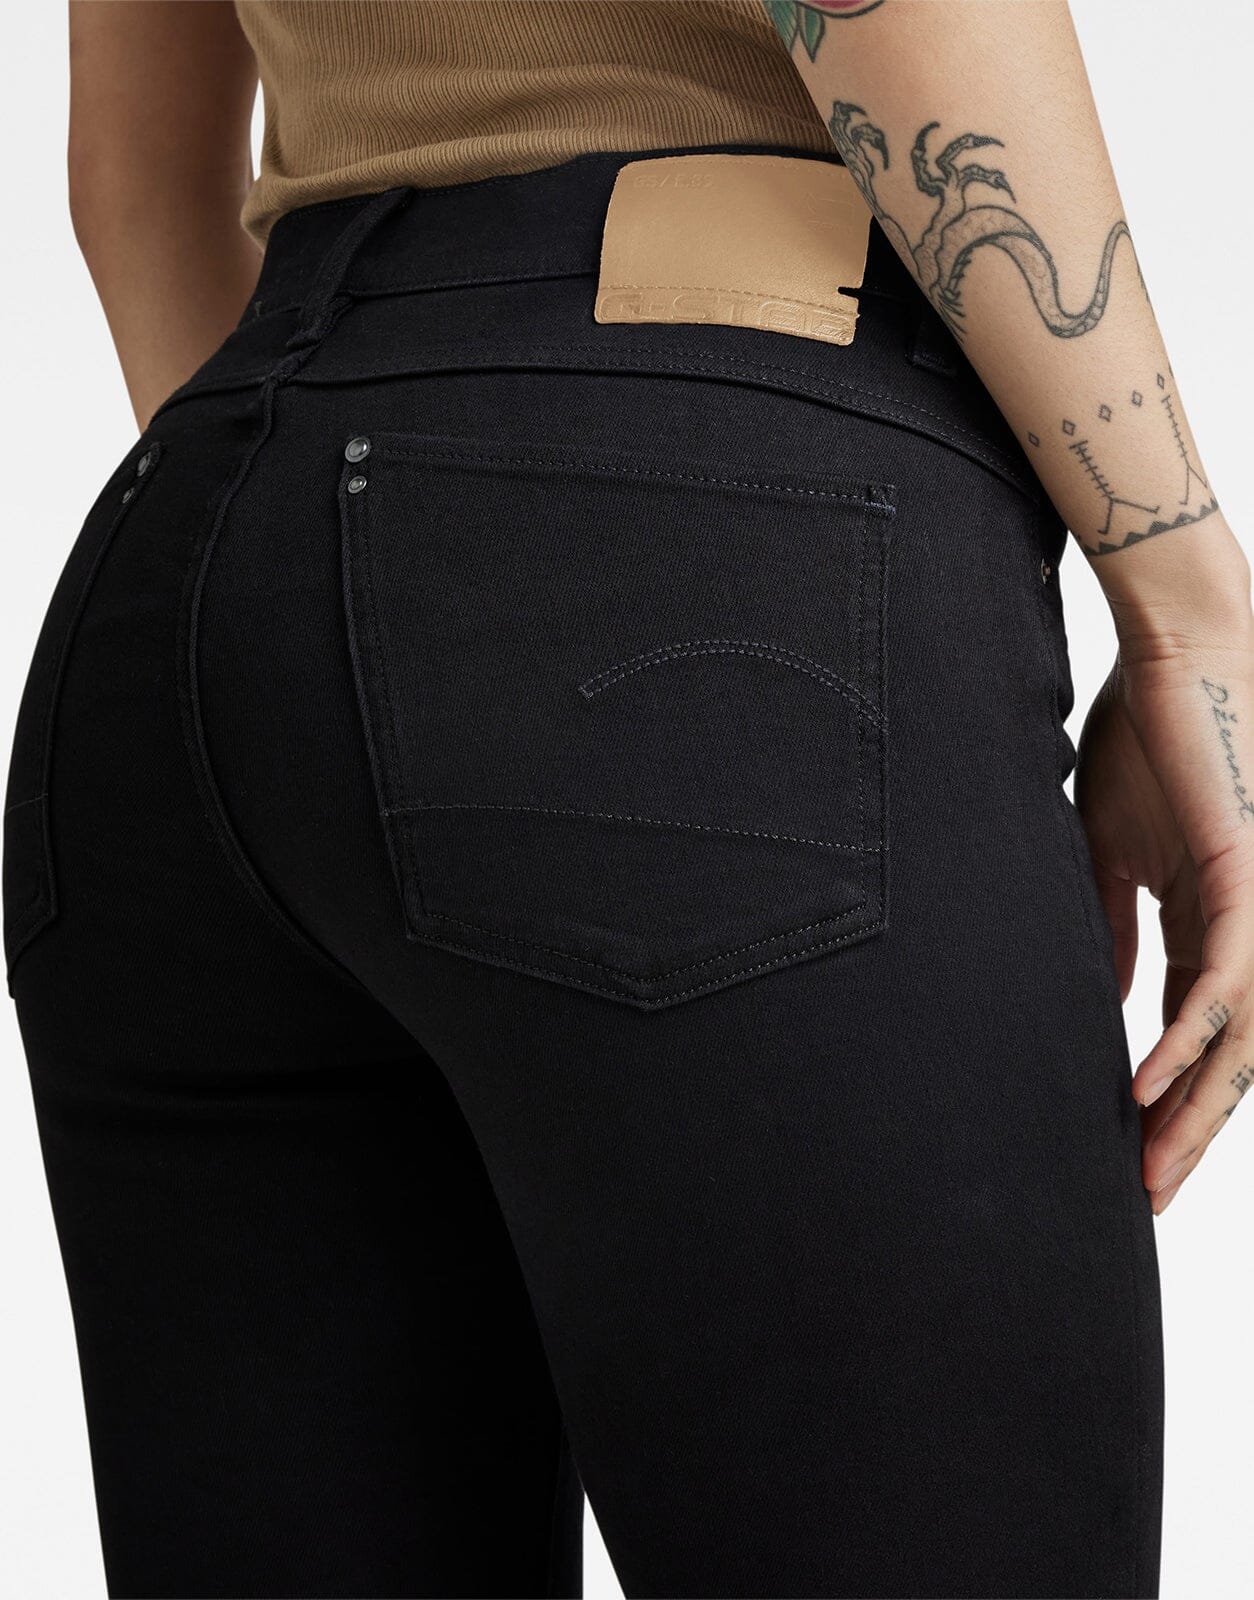 G-Star RAW Lhana Skinny Jeans Pitch Black - Subwear